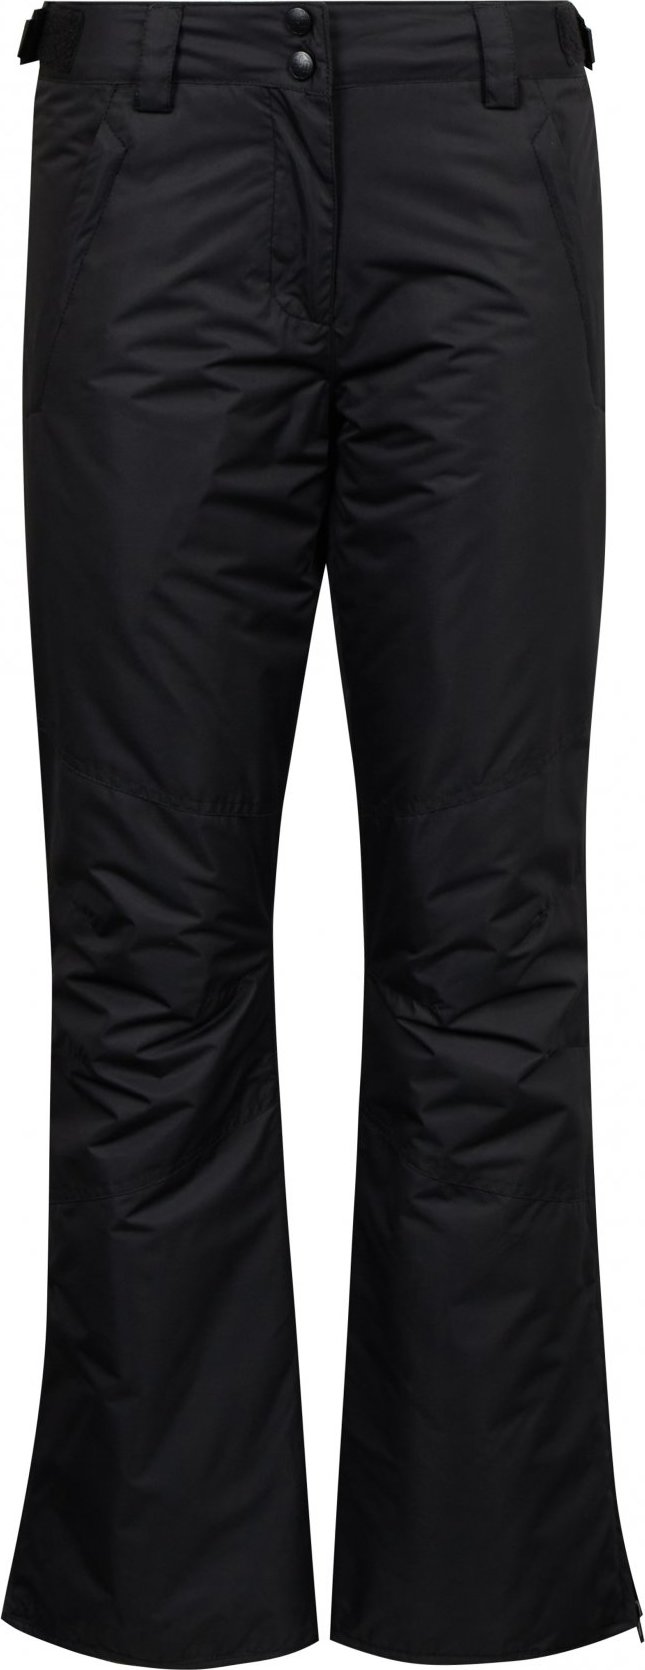 Dámské lyžařské kalhoty SAM 73 Indy černé Velikost: L